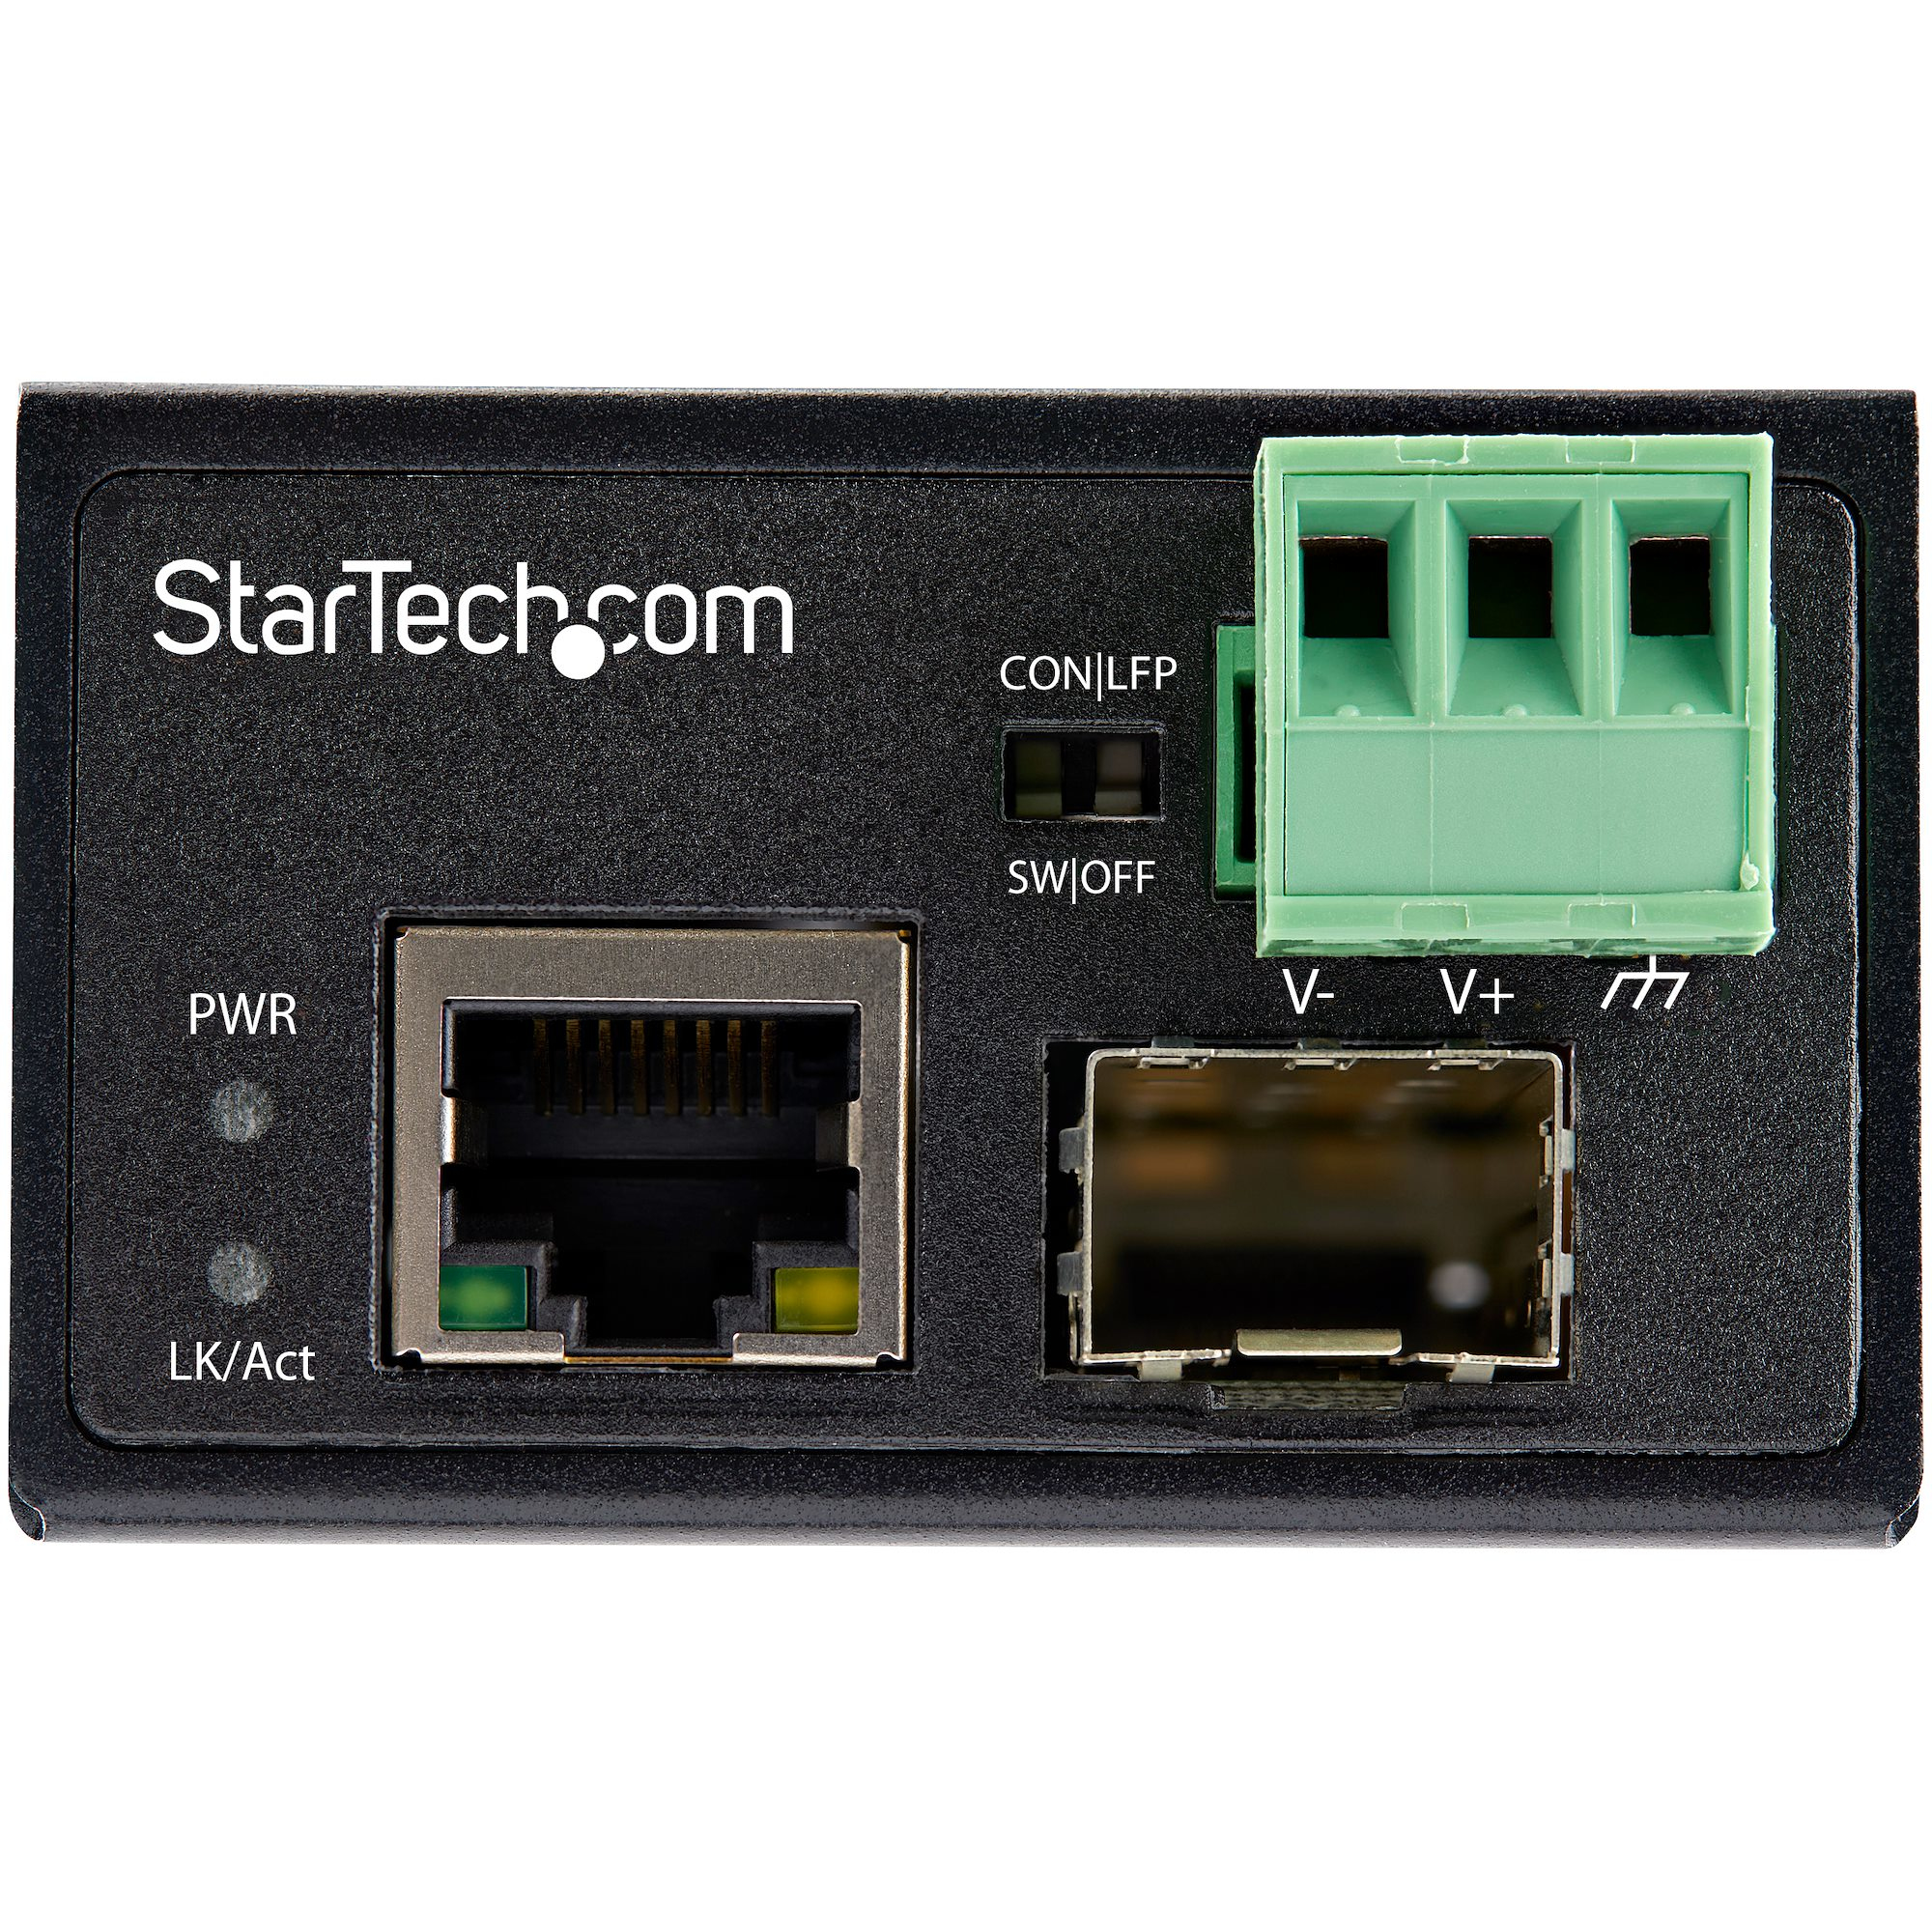 StarTech.com Industrial Media Converter - 100 Mbit/s Medienkonverter LWL Kupfer - Singlemode-/Multimode Glasfaser auf Kupfer Netzwerk - 12-56 V DC - IP-30/-40&deg;C bis 75&deg;C (IMC100MSFP)